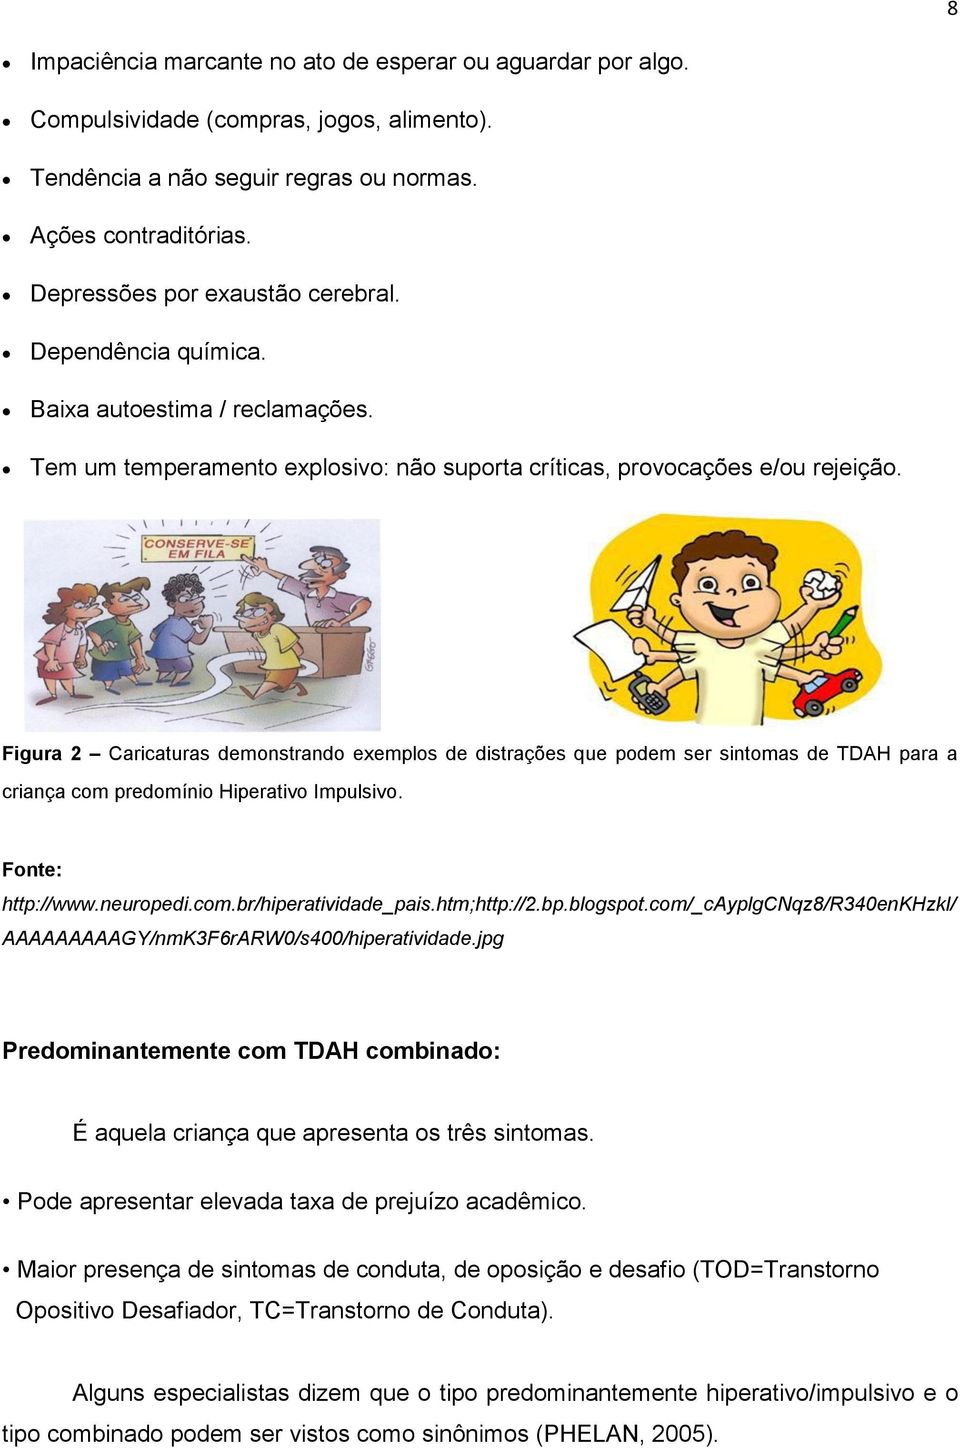 Figura 2 Caricaturas demonstrando exemplos de distrações que podem ser sintomas de TDAH para a criança com predomínio Hiperativo Impulsivo. Fonte: http://www.neuropedi.com.br/hiperatividade_pais.